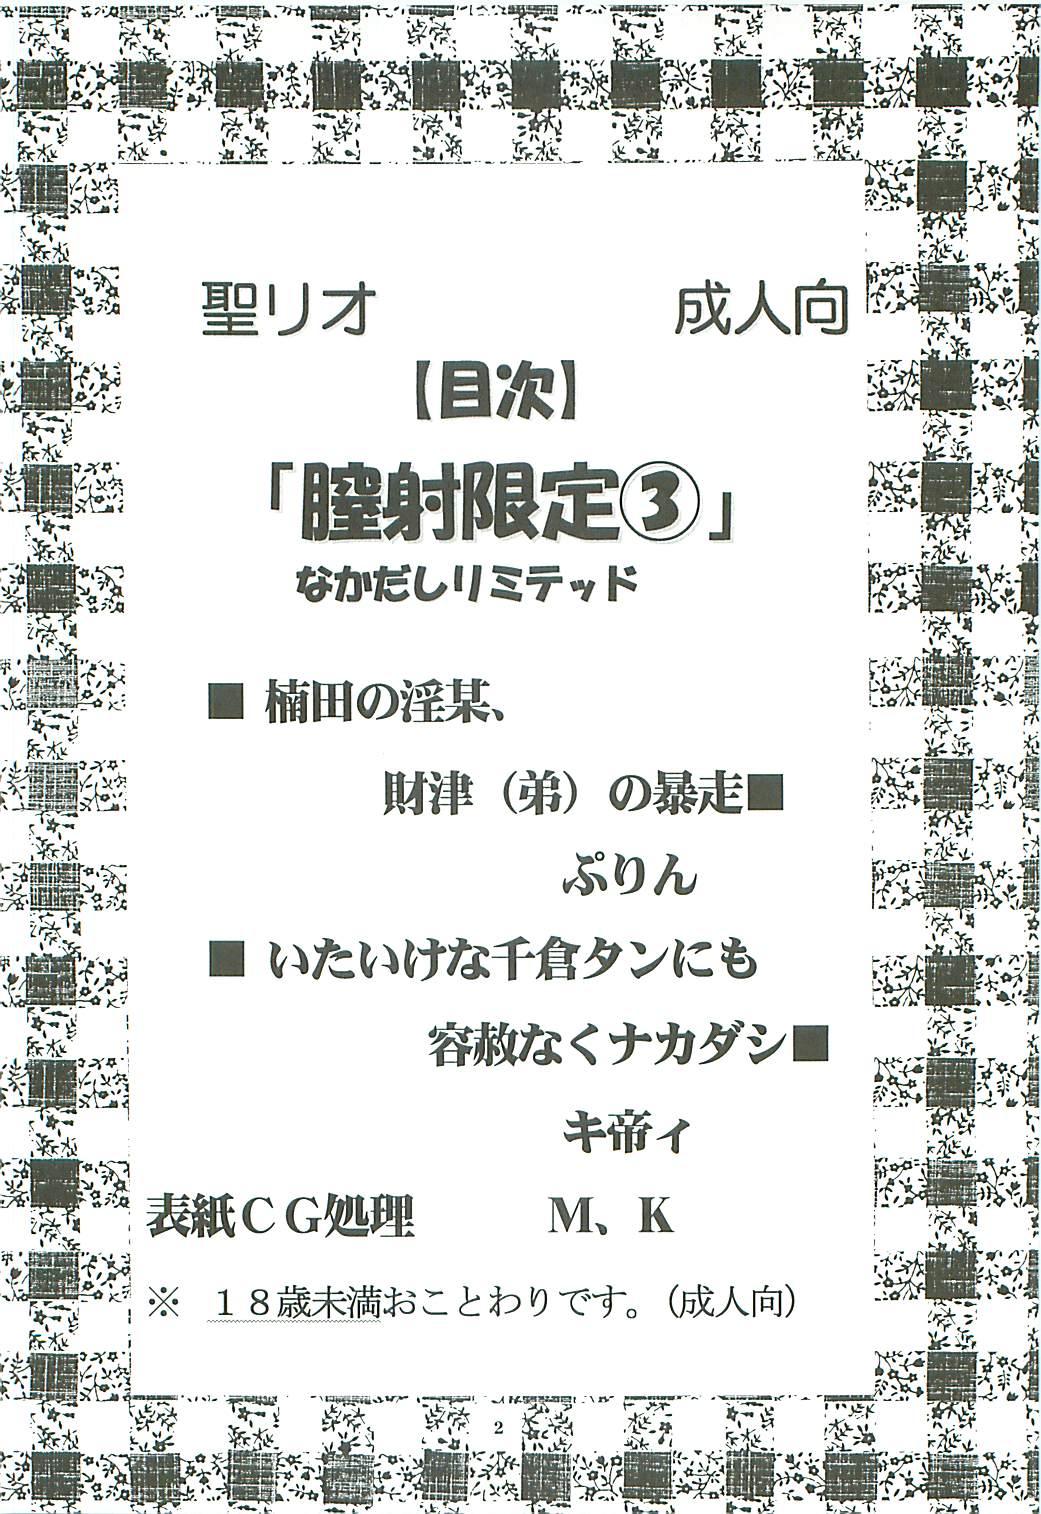 Young Tits Chitsui Gentei Nakadashi Limited vol.3 - Hatsukoi limited Ninfeta - Page 3